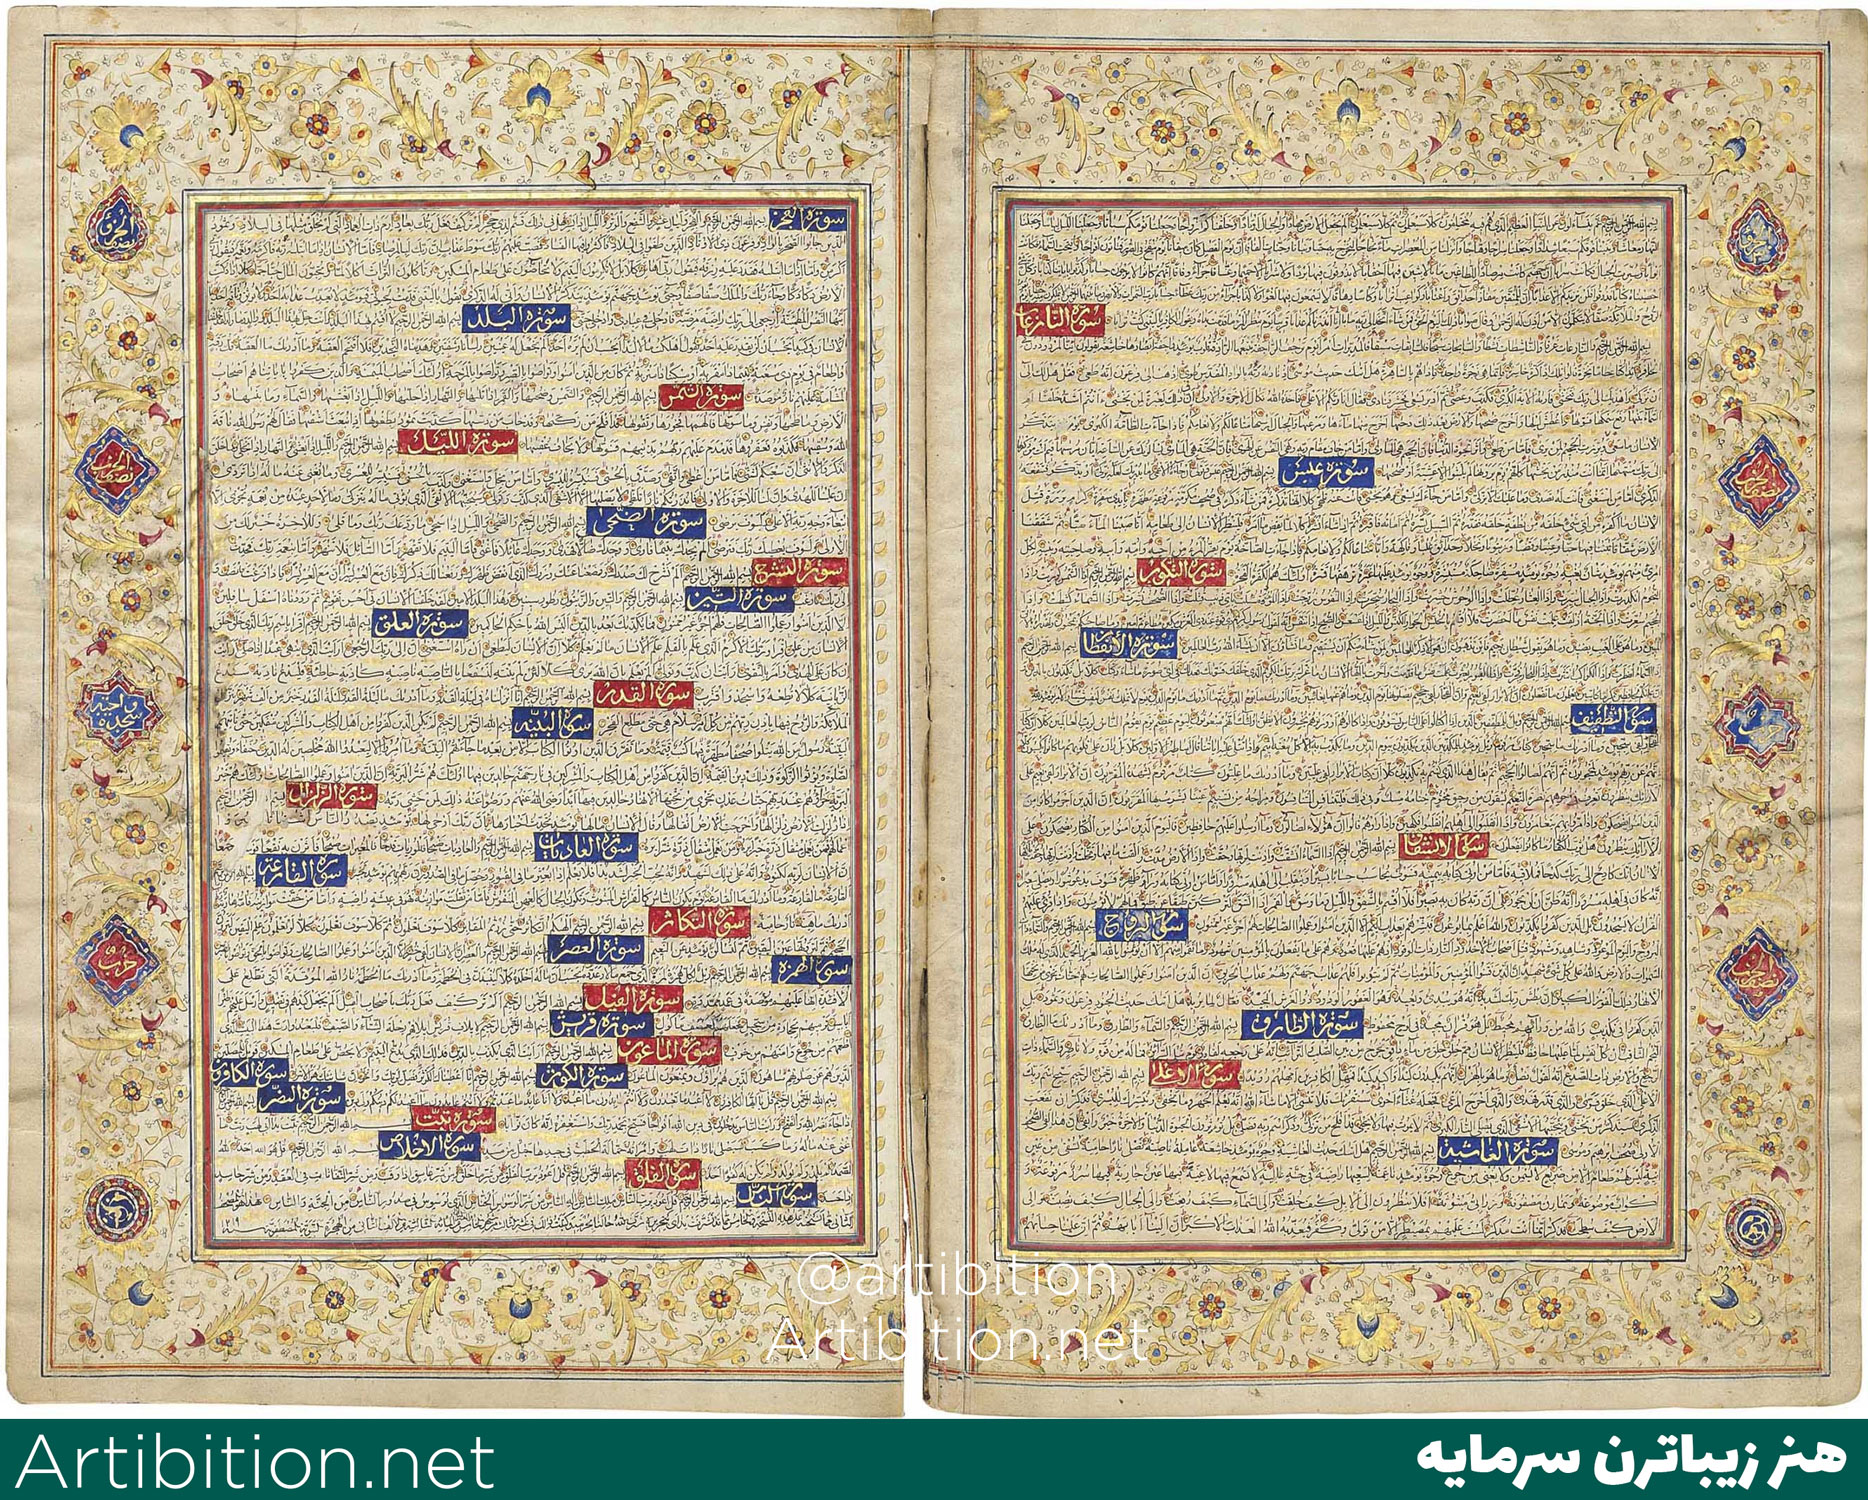 نسخه خطی قرآن با خط غبار- ایران دوره قاجار اوایل قرن 19